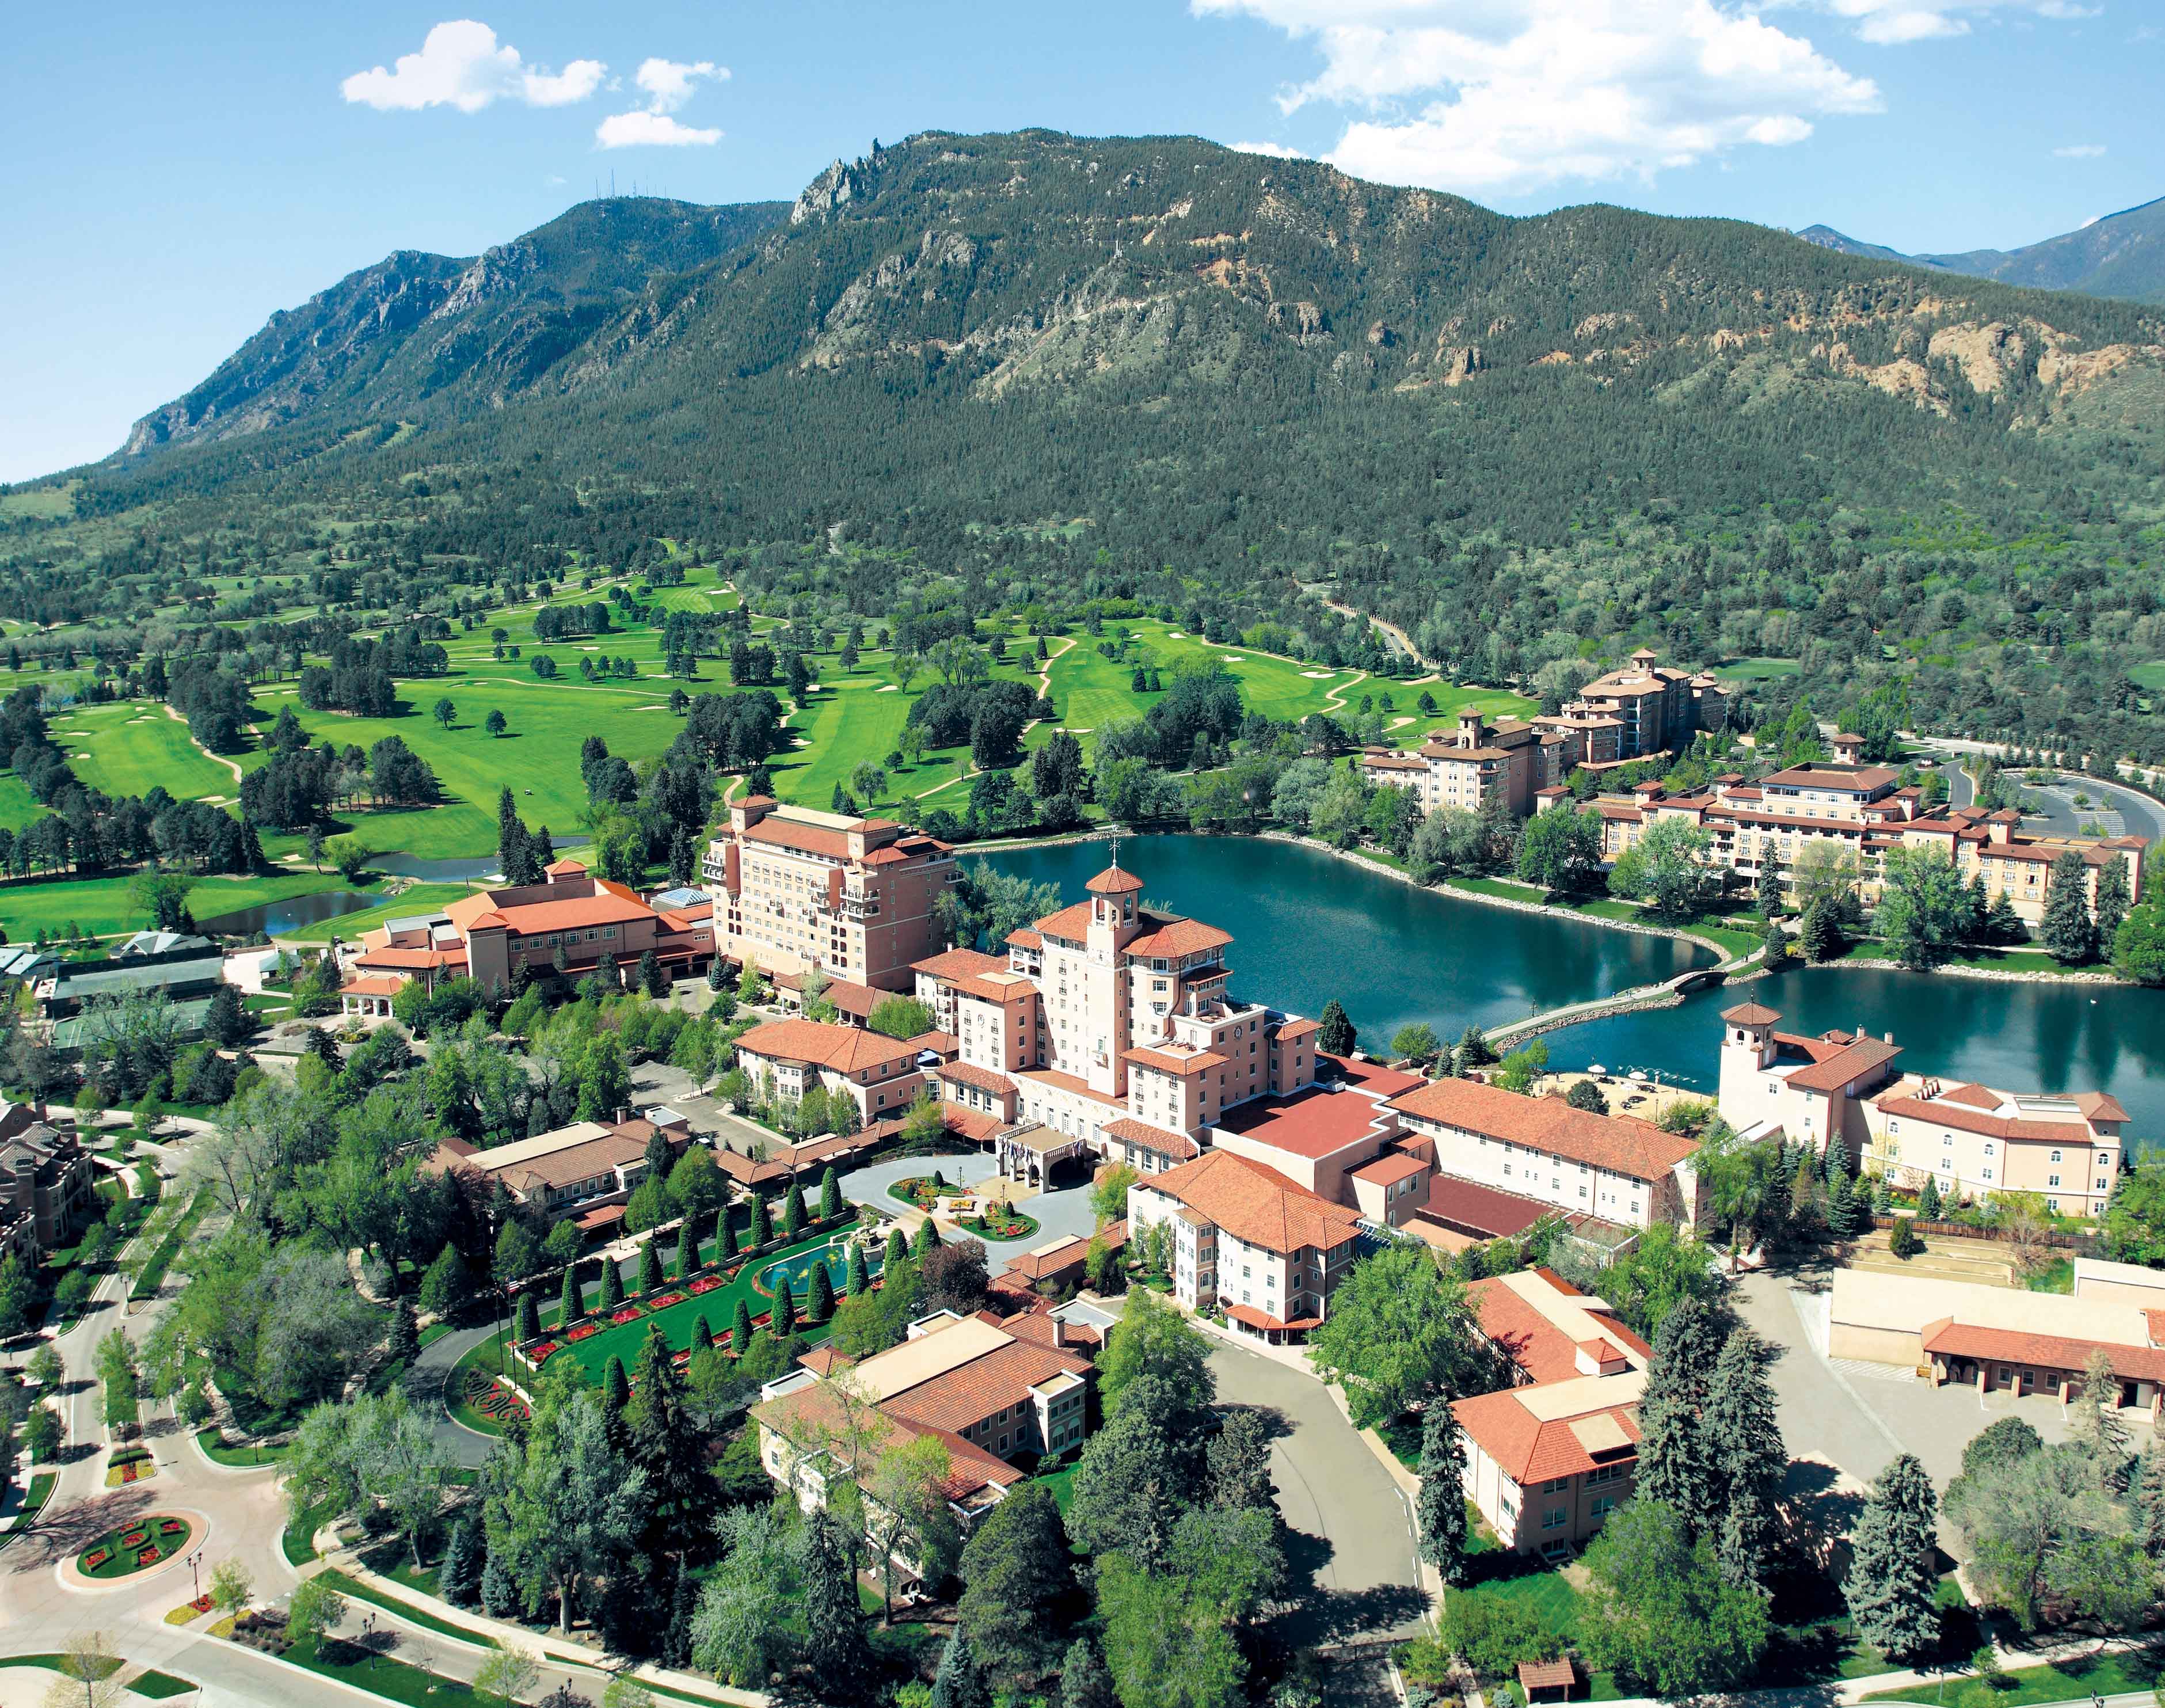 The Broadmoor in Colorado